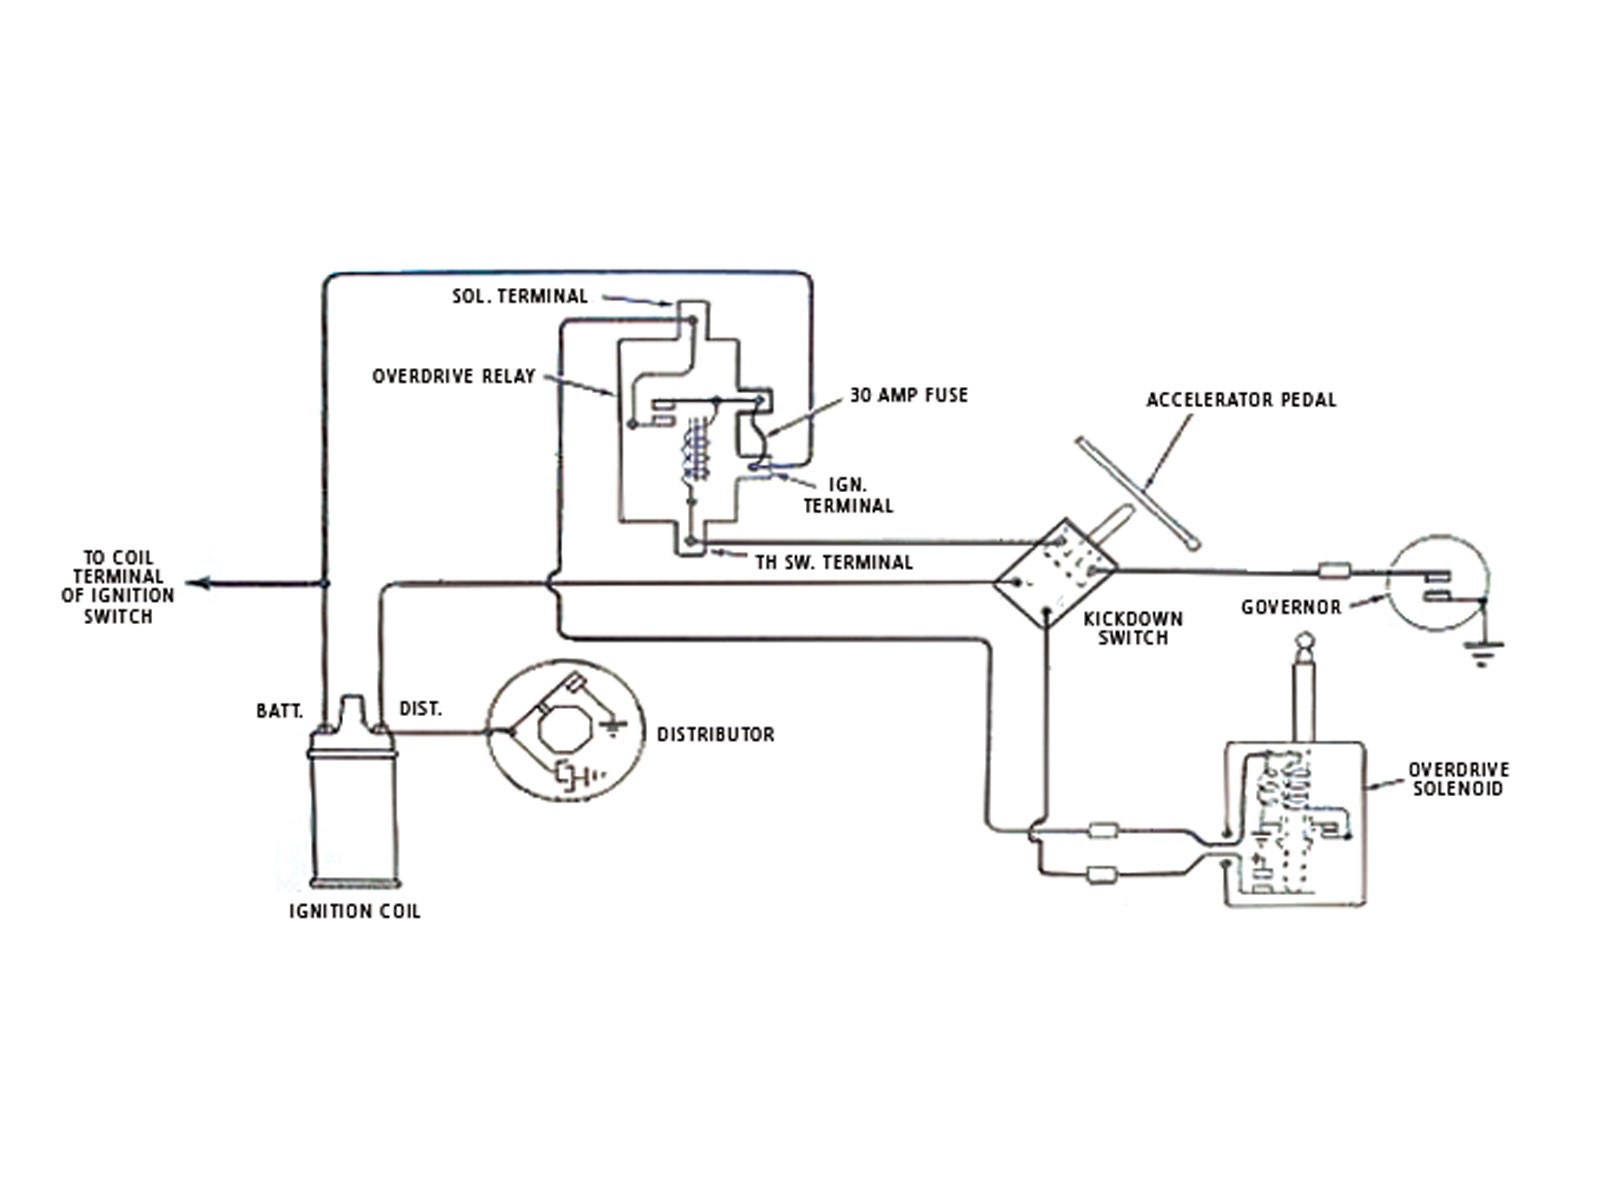 Relay Internal Wiring Diagram Valid Mgb Alternator Wiring Diagram Best Wiring Diagram Safety Relay Best